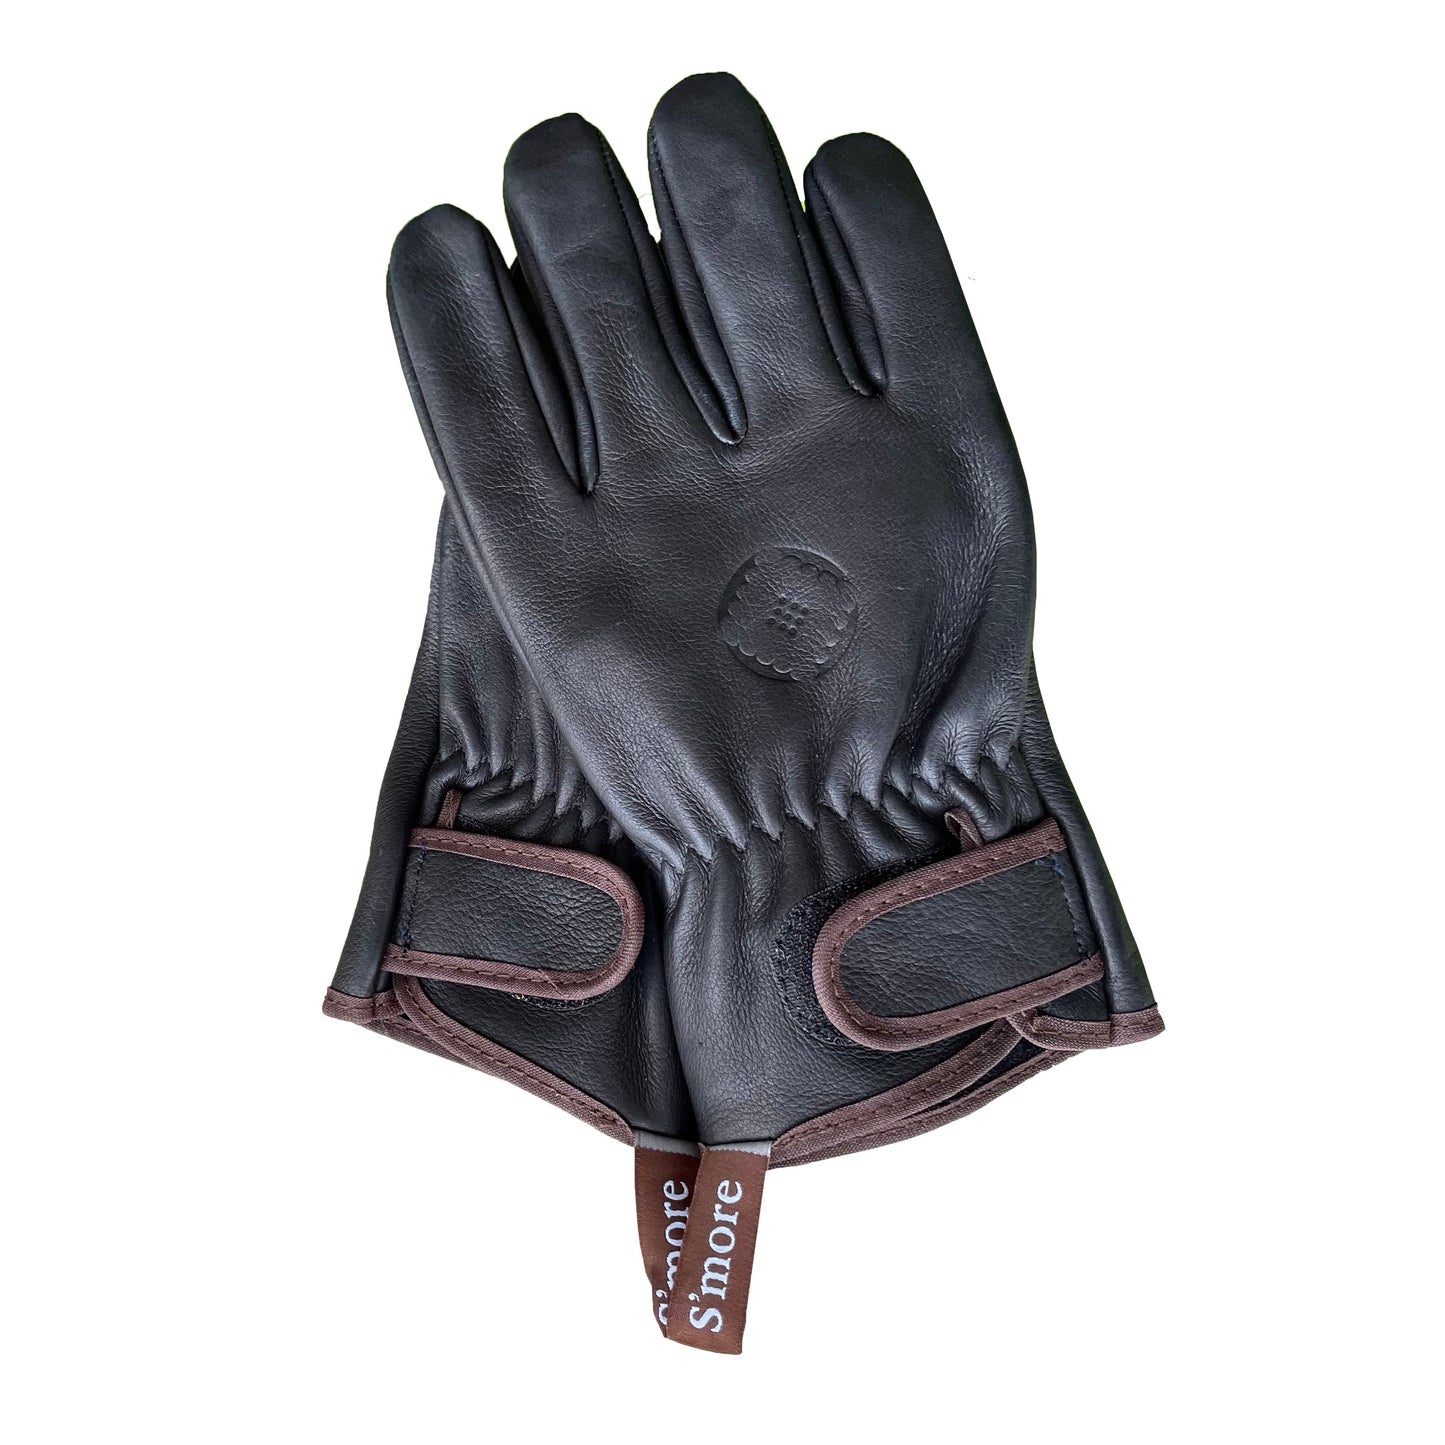 Leather gloves 工作手套